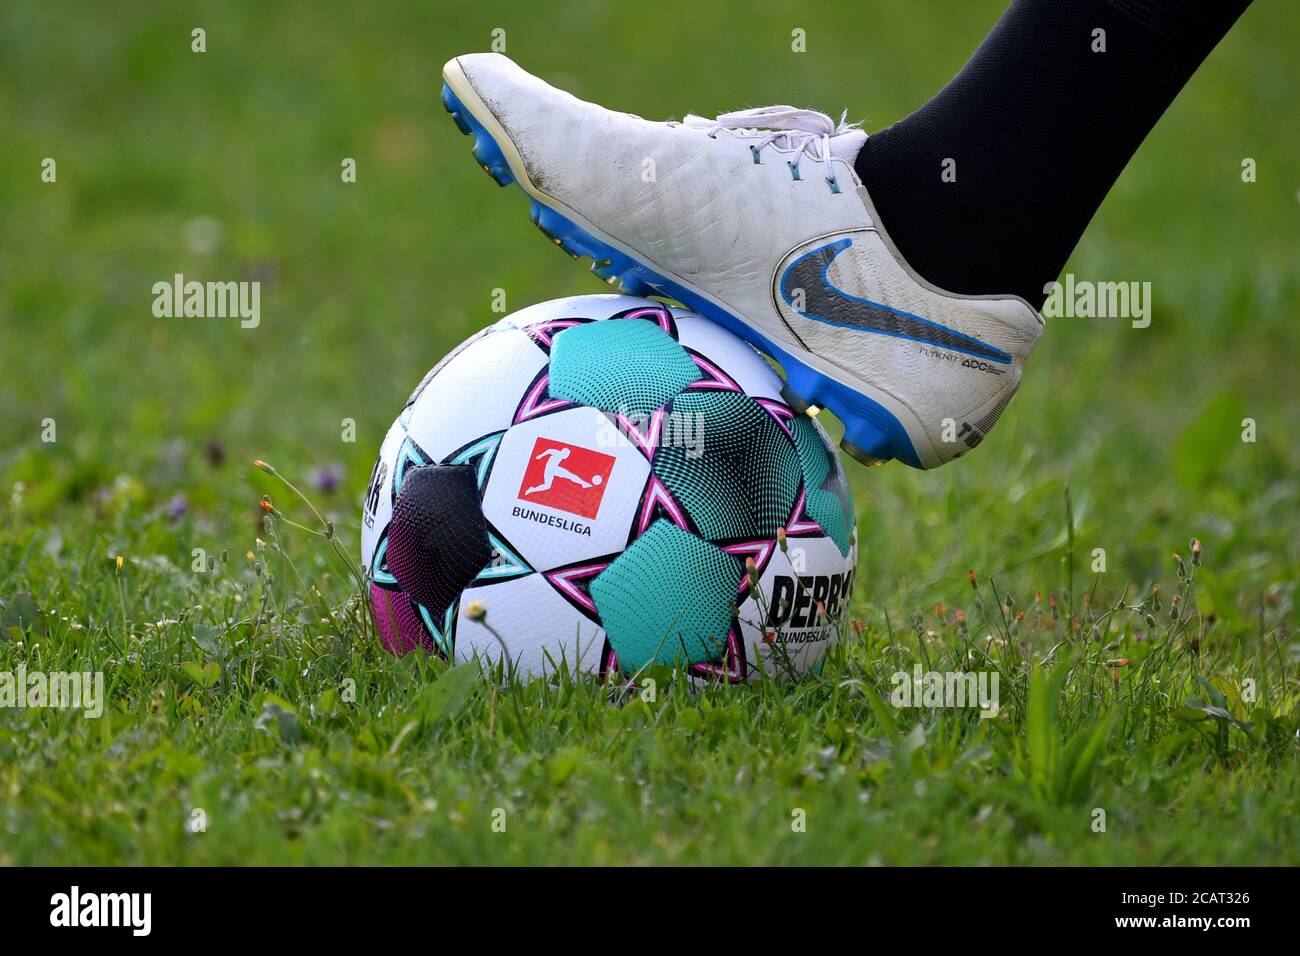 Motivo de borde, piernas con detalle, zapatillas de fútbol Nike, pie en el  balón oficial del partido de la temporada de Derbystar BUNDESLIGA 2020/21.  Fútbol, temporada 2020/21 SV Heimstetten-FC Augsburg 0-9, el